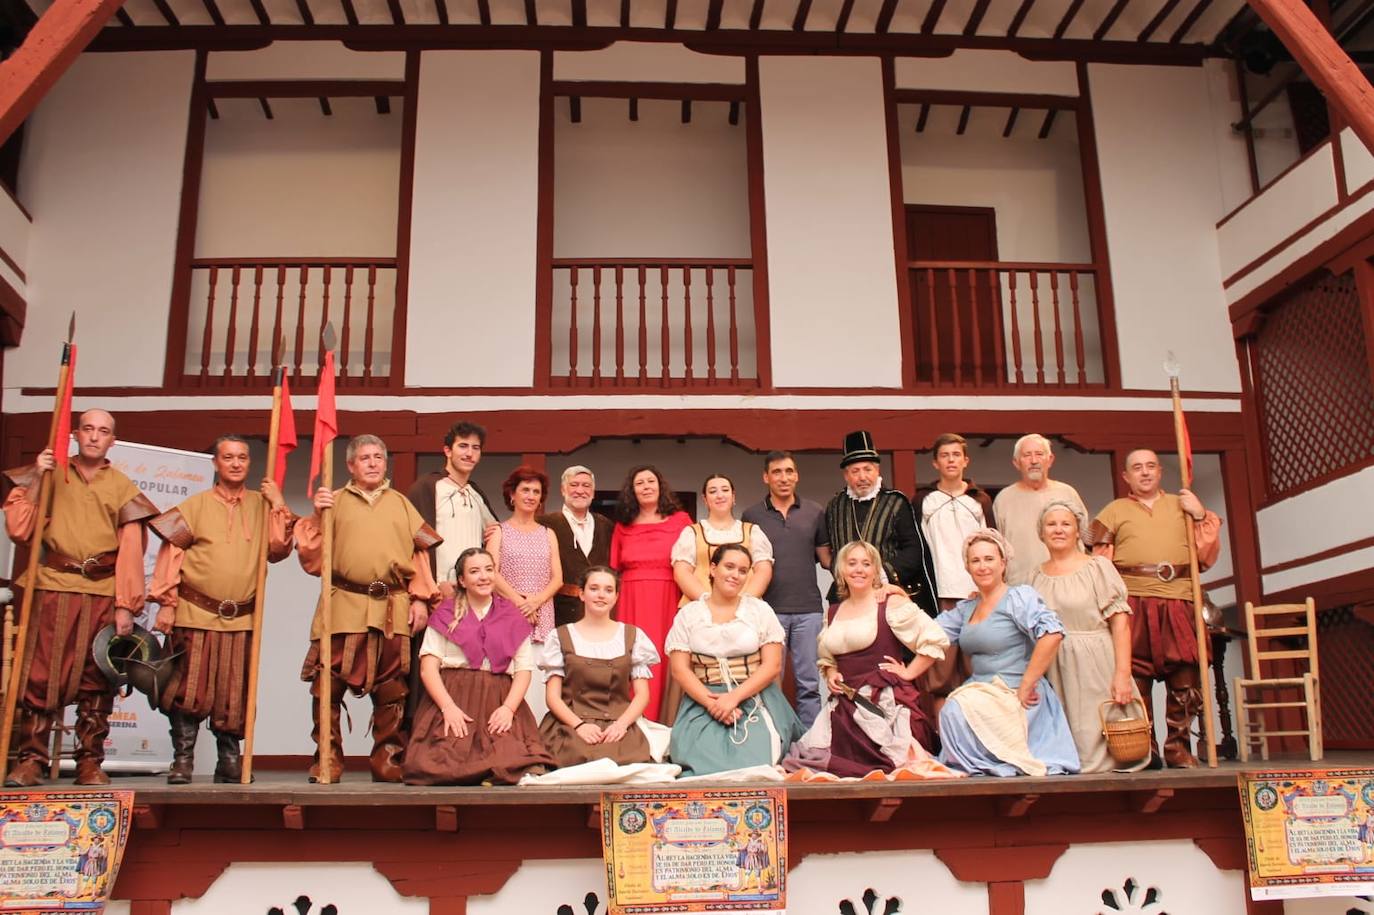 Elenco de actores que se desplazaron hasta Almagro /v. c.